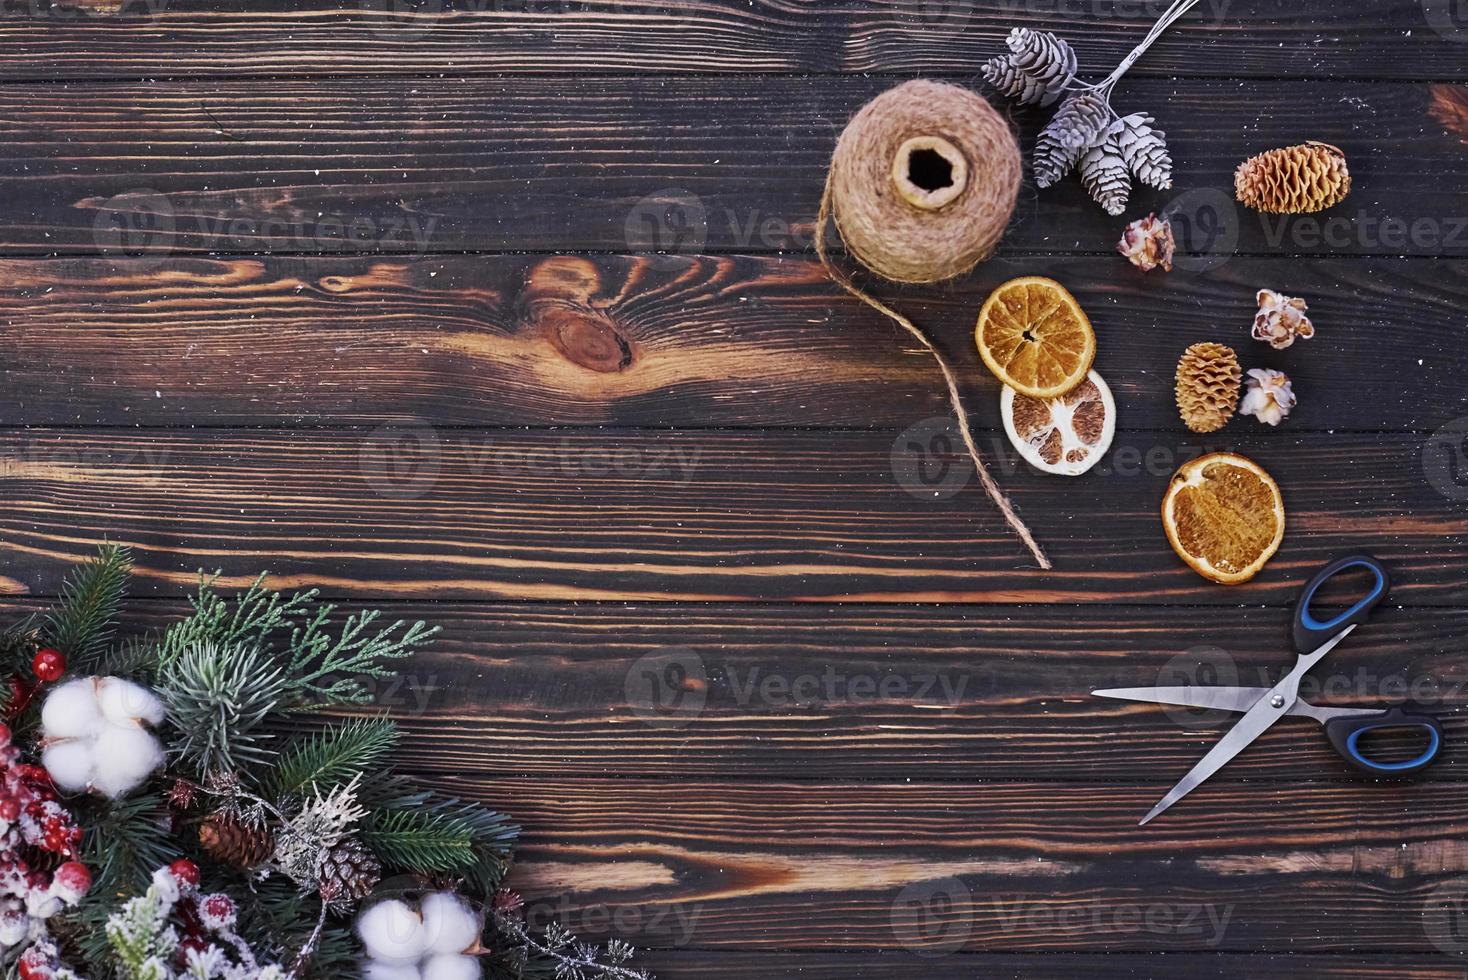 ciseaux sur la table. vue de dessus du cadre festif de noël avec des décorations du nouvel an photo